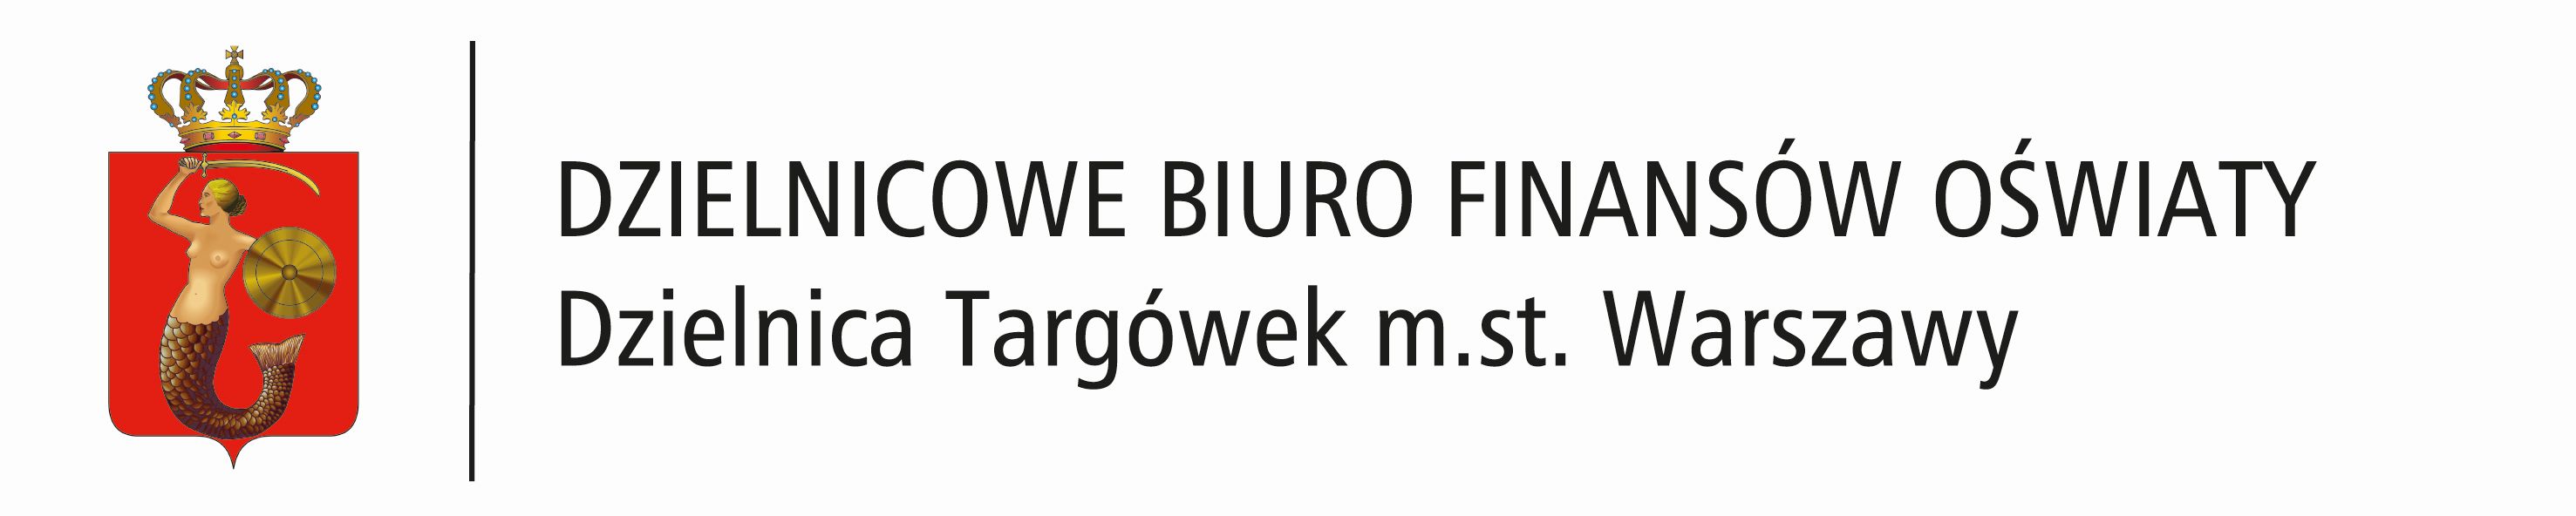 Dzielnicowe Biuro Finansów Oświaty - Targówek m. st. Warszawy